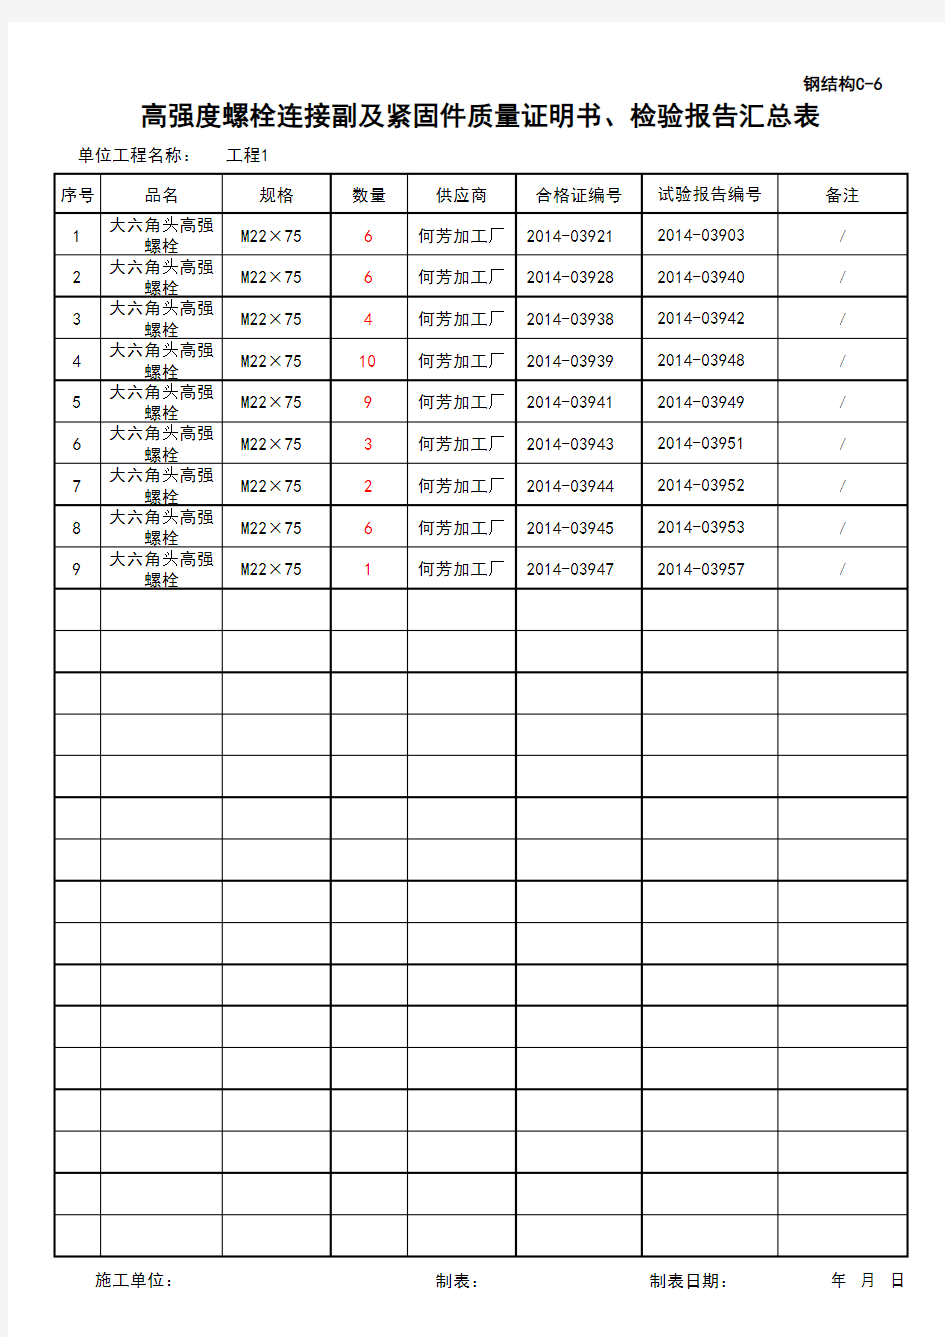 (上海市新版)高强度螺栓连接副及紧固件质量证明书、检验报告汇总表